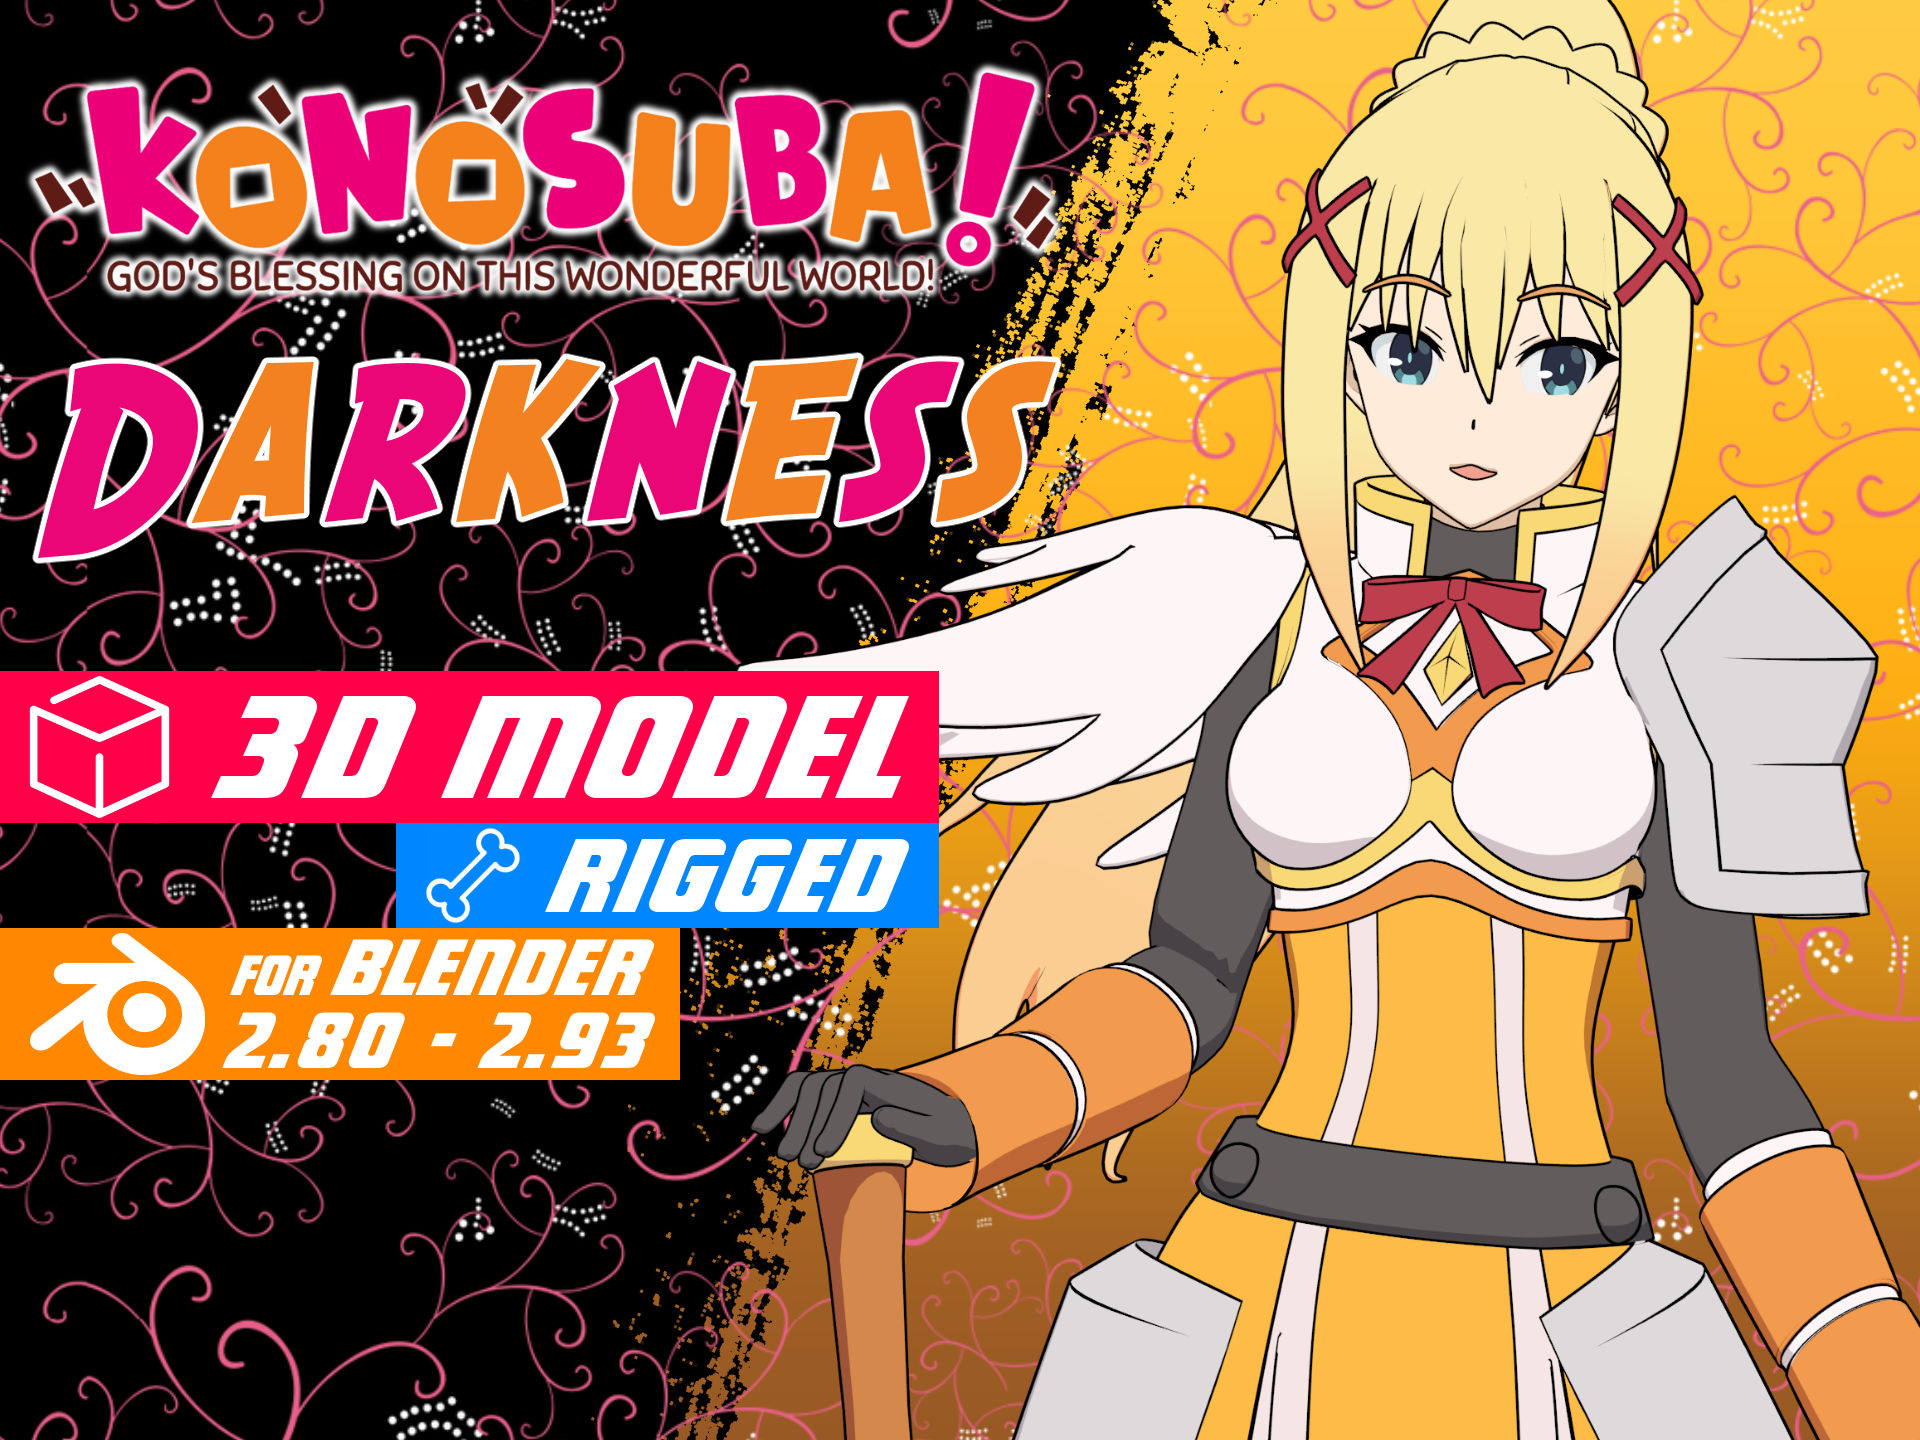 Darkness - Konosuba Anime - 3D Model Blender - 3D model by